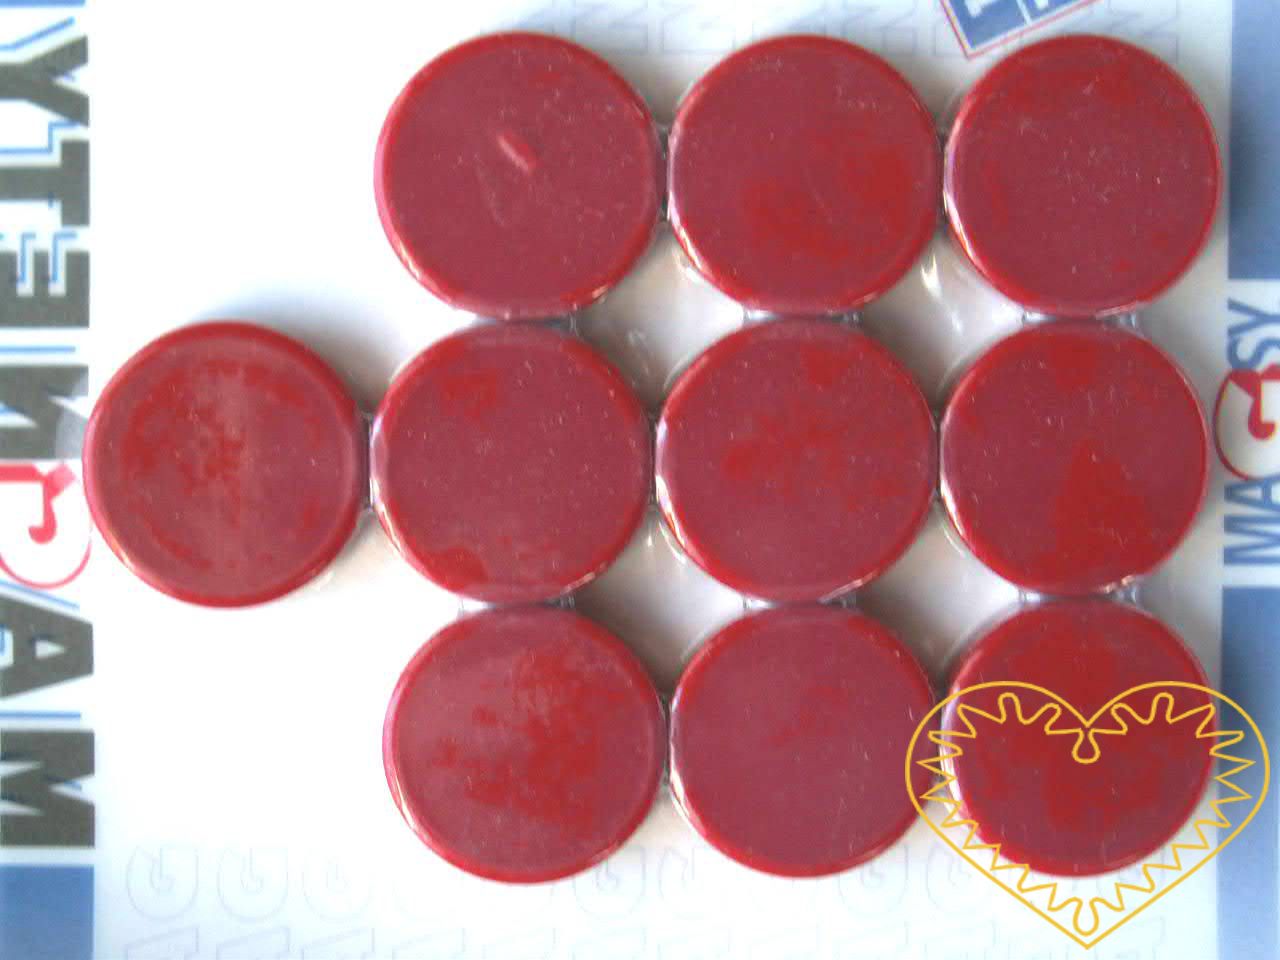 Sada 10 kusů červených kulatých magnetů Ø 2 cm. Vhodné na magnetickou tabuli, nástěnku, flipchart či doma na lednici. Lze je využít jako základ pro tvorbu vlastních originálních magnetů.